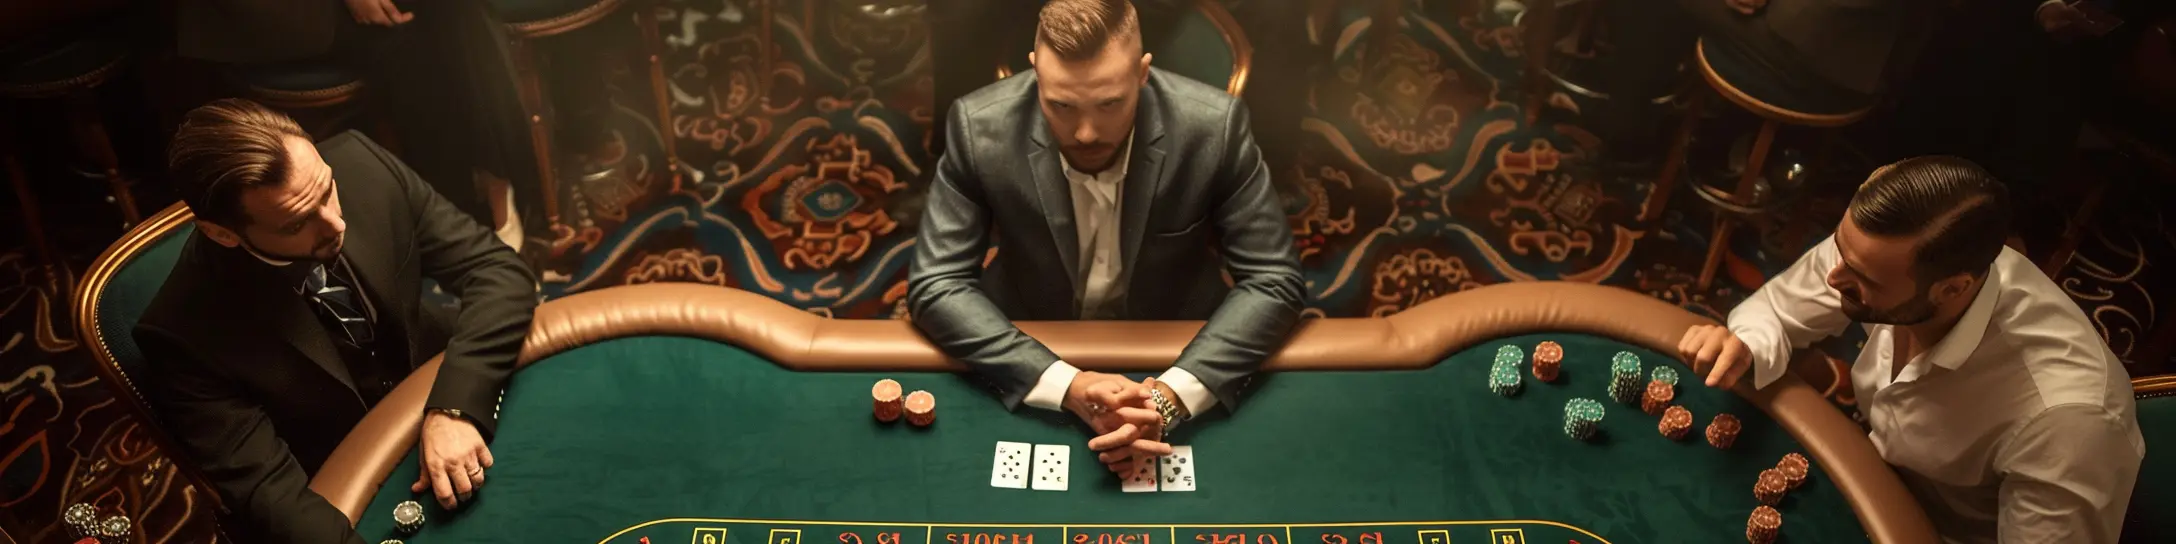 mans playing poker